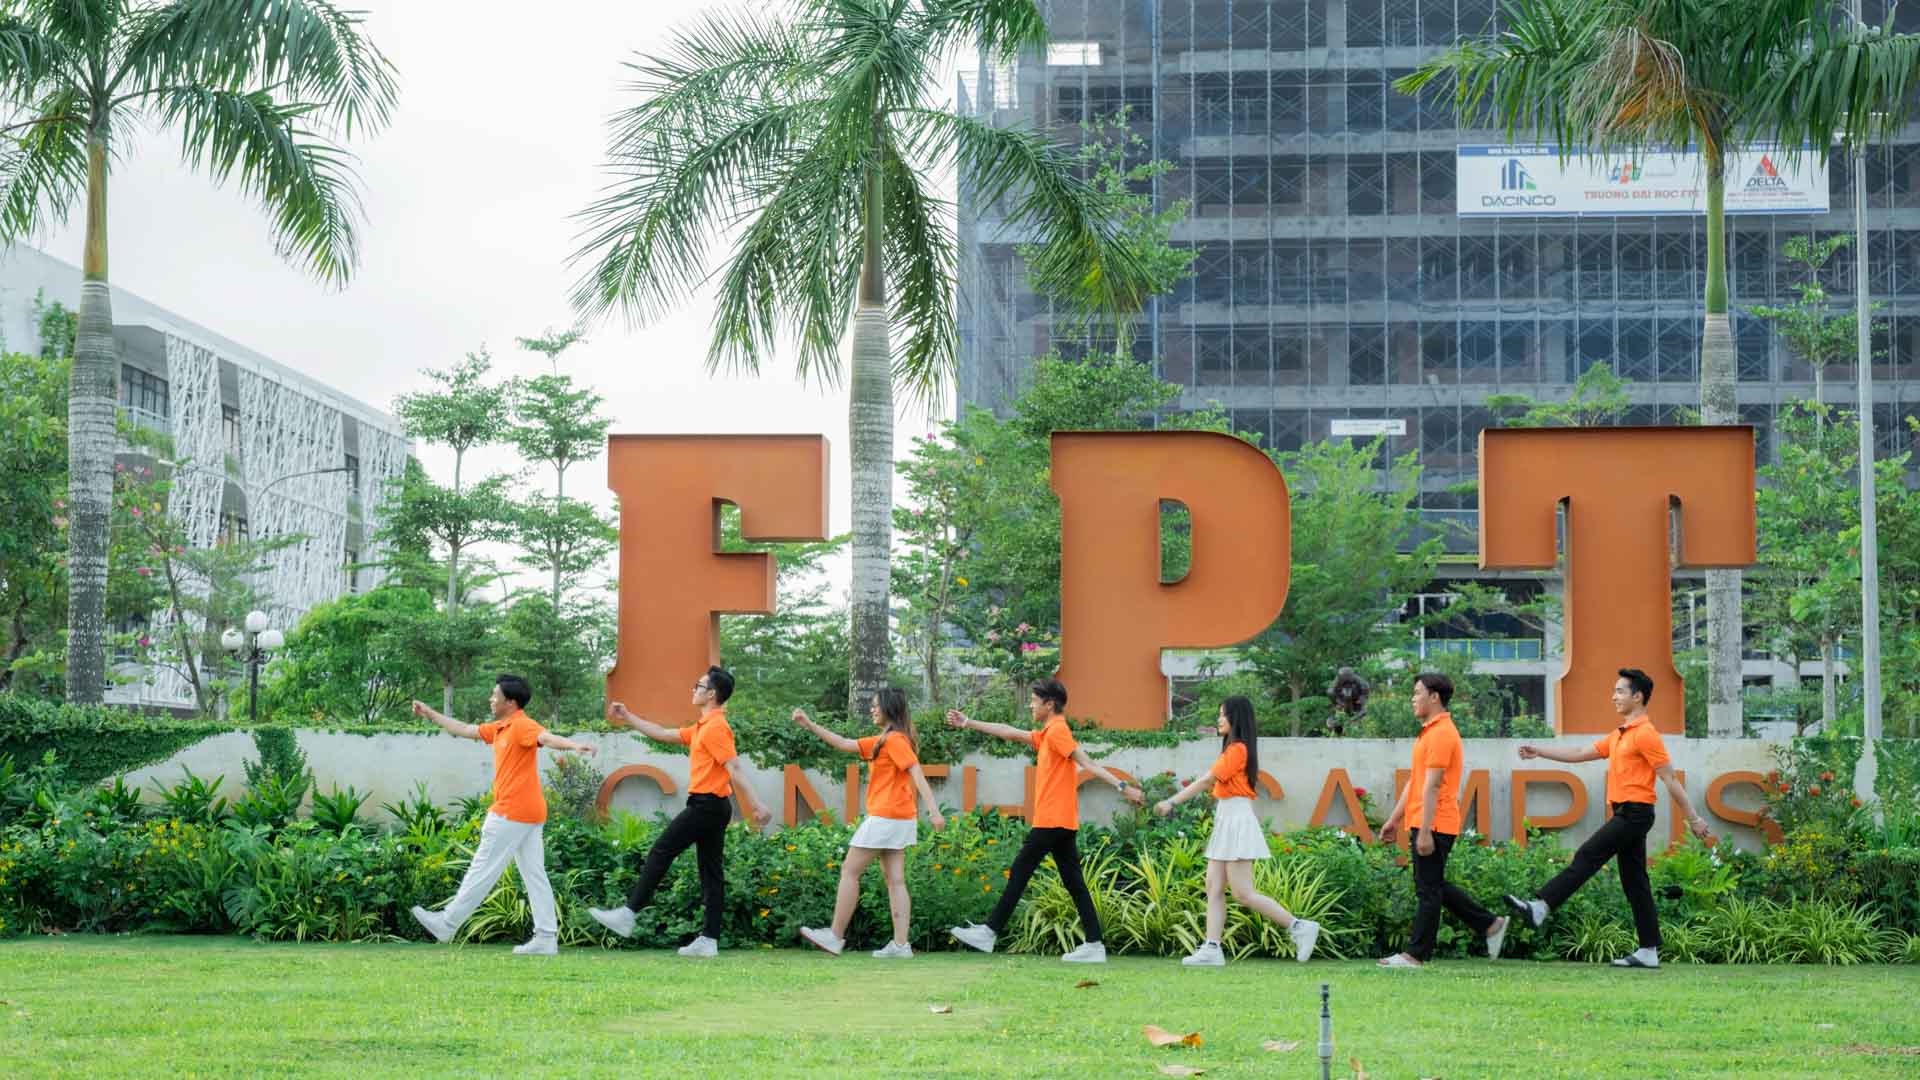 Đại học FPT với môi trường học tập hiện đại, năng động là một trong những trường đào tạo Digital Marketing hàng đầu cả nước